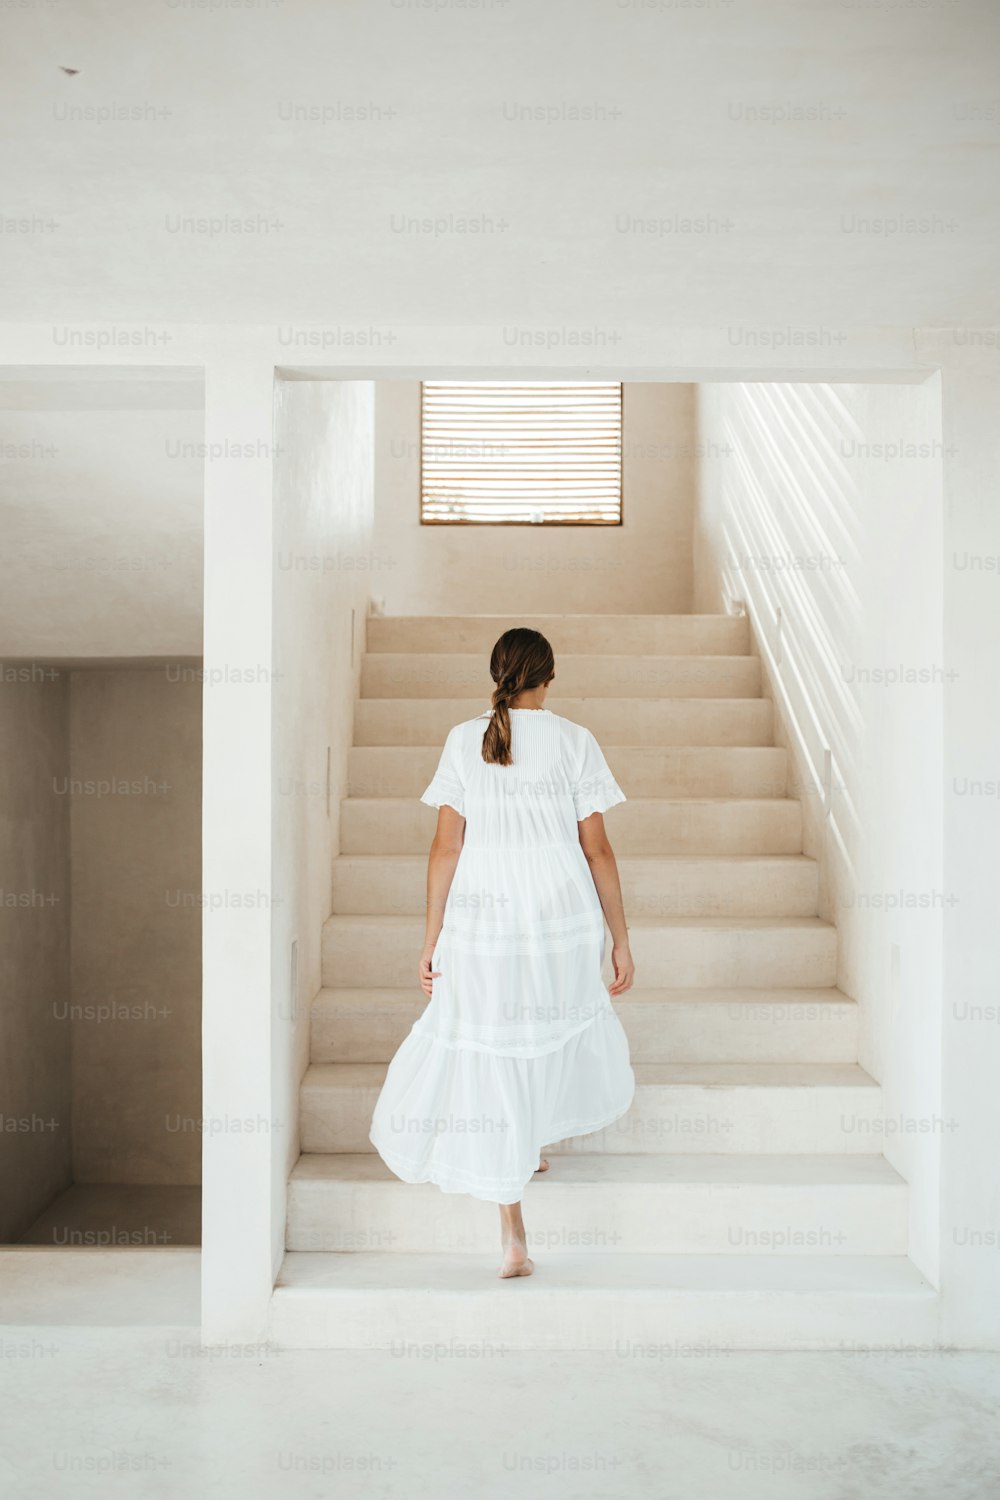 하얀 드레스를 입은 여자가 계단을 올라가고 있다